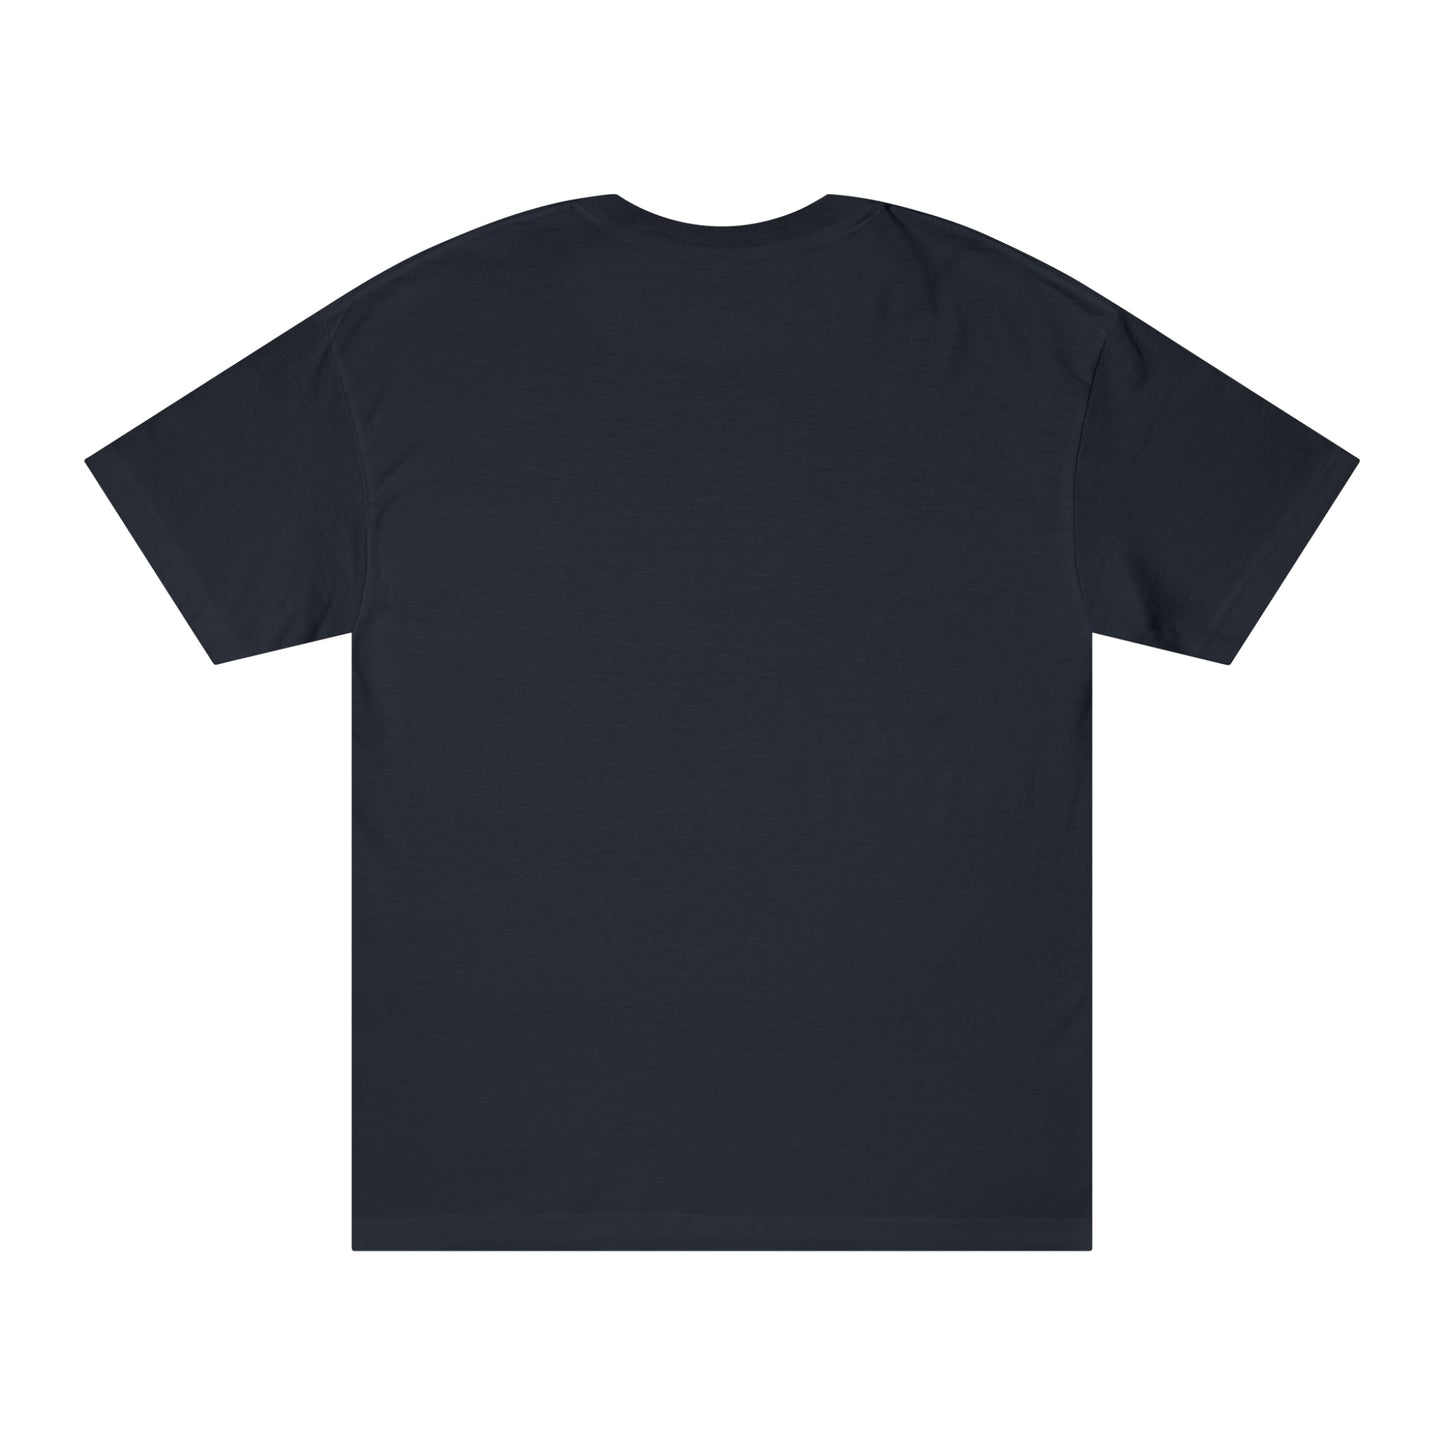 Brave the Waves (basics dark) T-Shirt